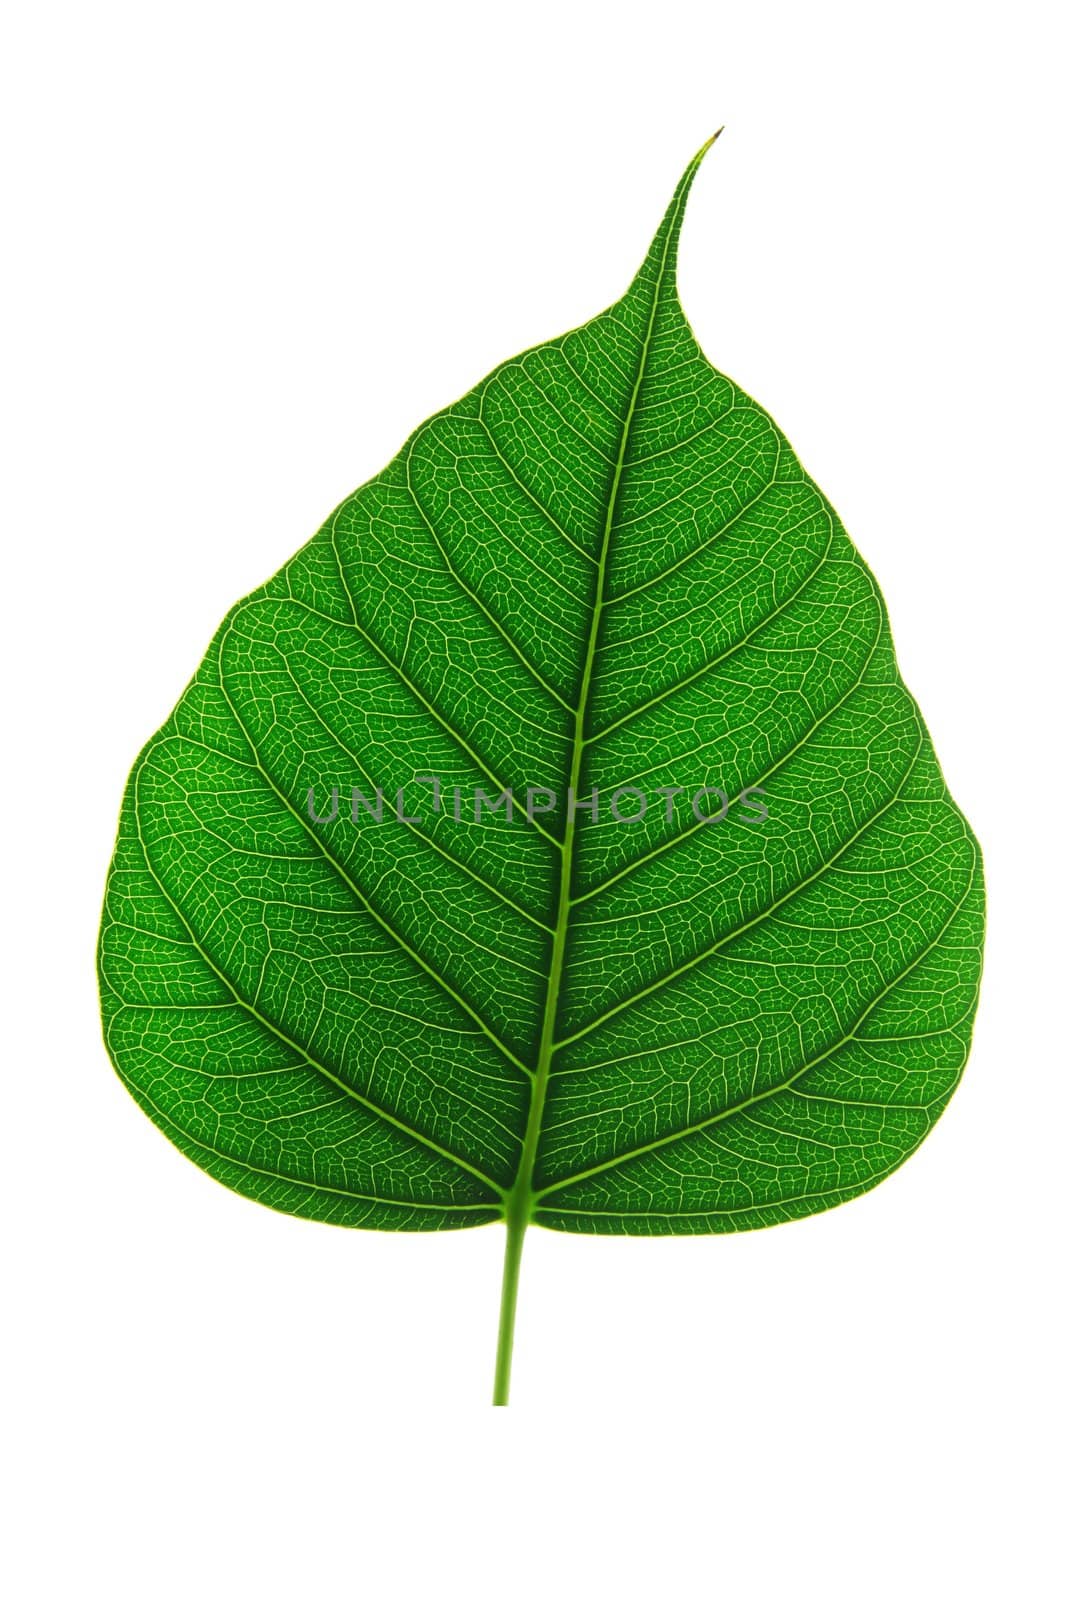 Leaf surface by antpkr